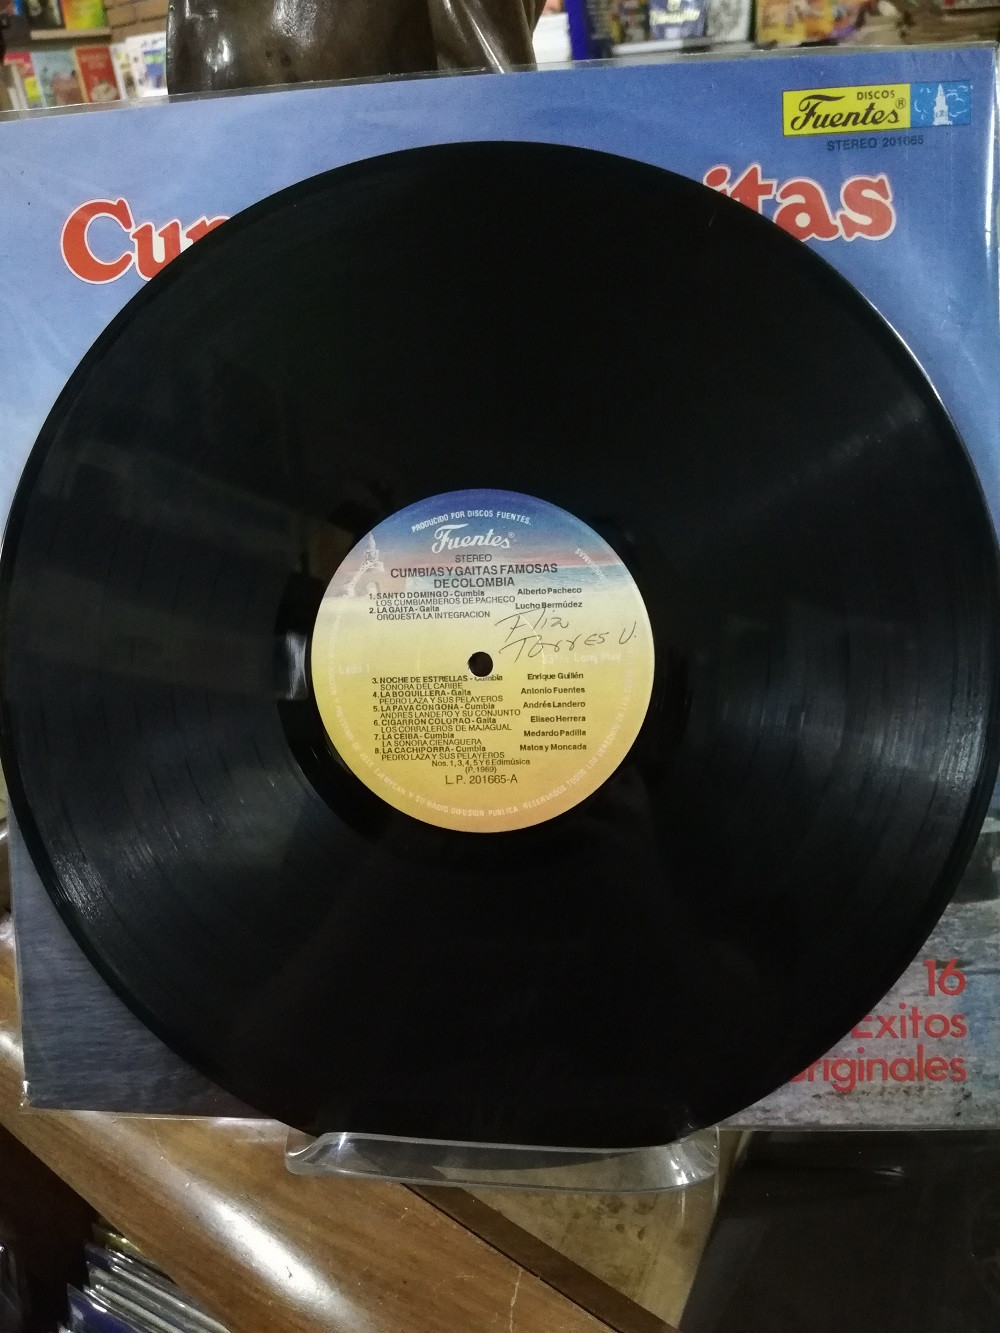 Imagen LP CUMBIAS Y GAITAS FAMOSAS DE COLOMBIA - 16 EXITOS ORIGINALES 3